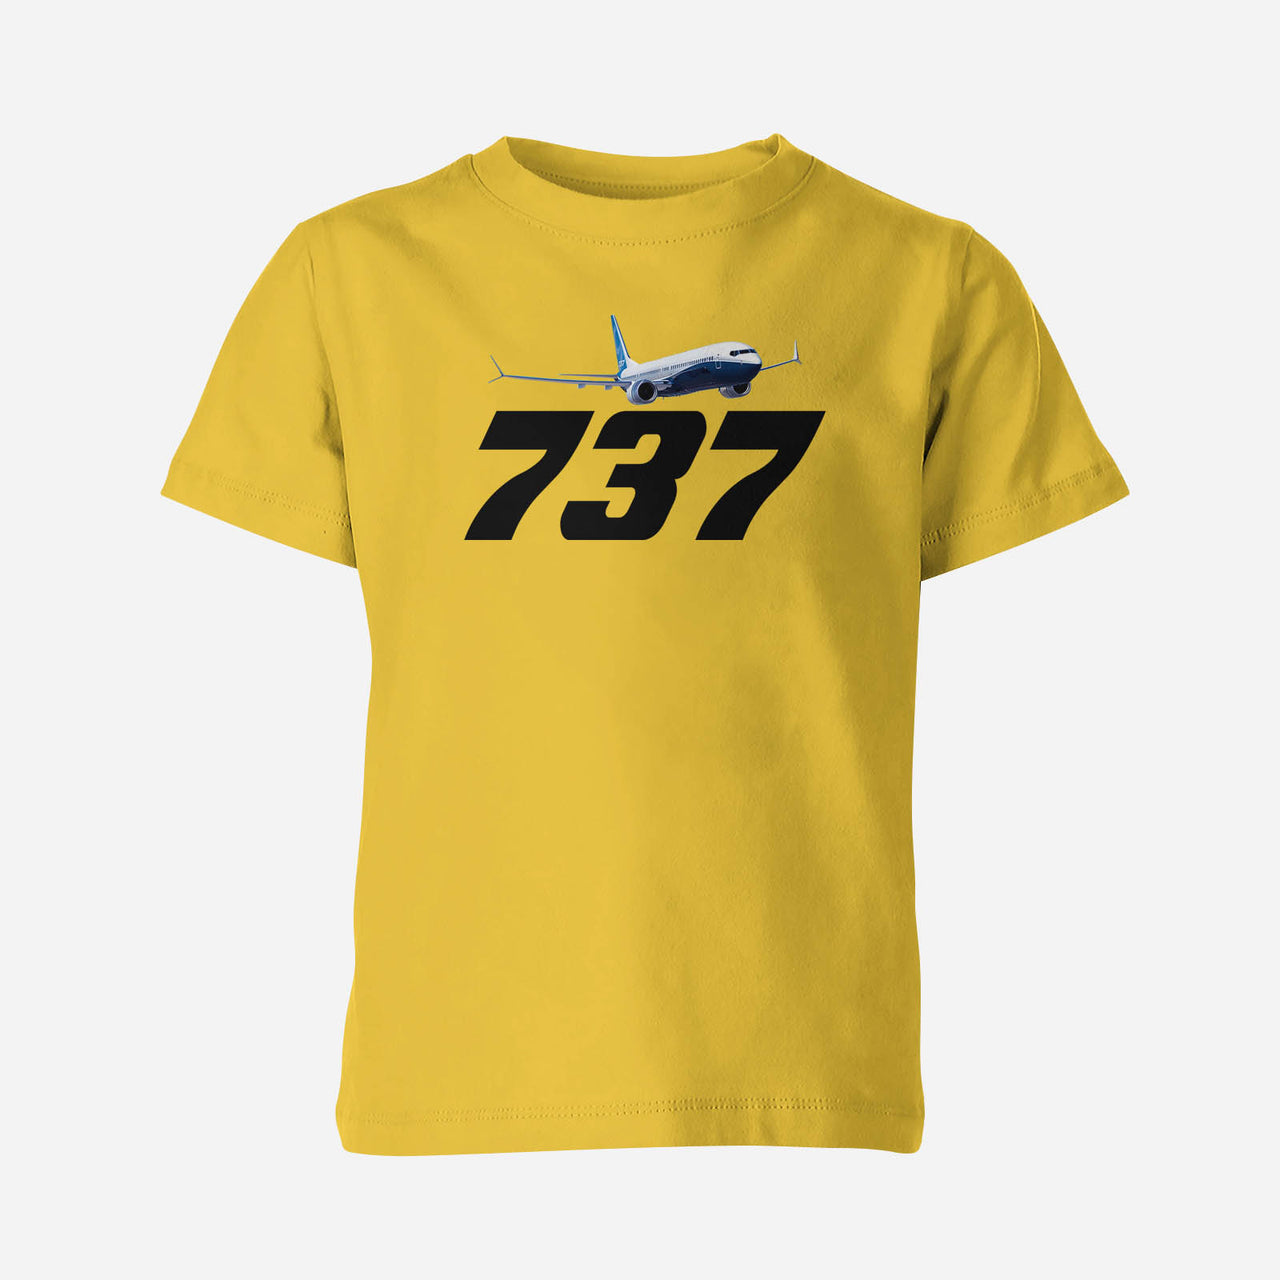 Super Boeing 737-800 Designed Children T-Shirts